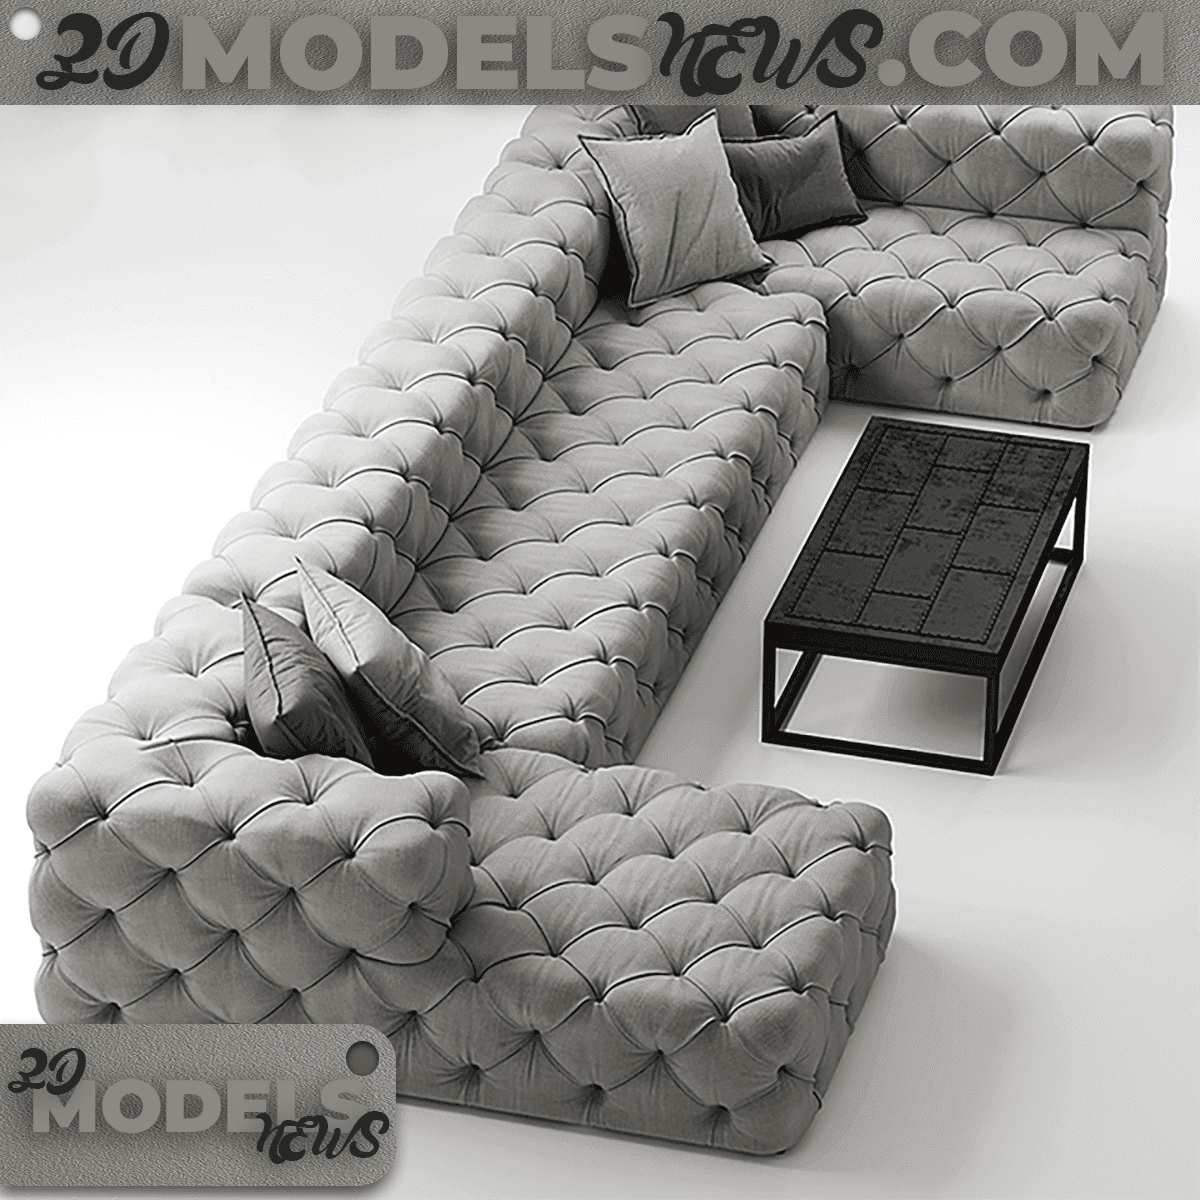 RH Soho Tufted Sofa Model 3